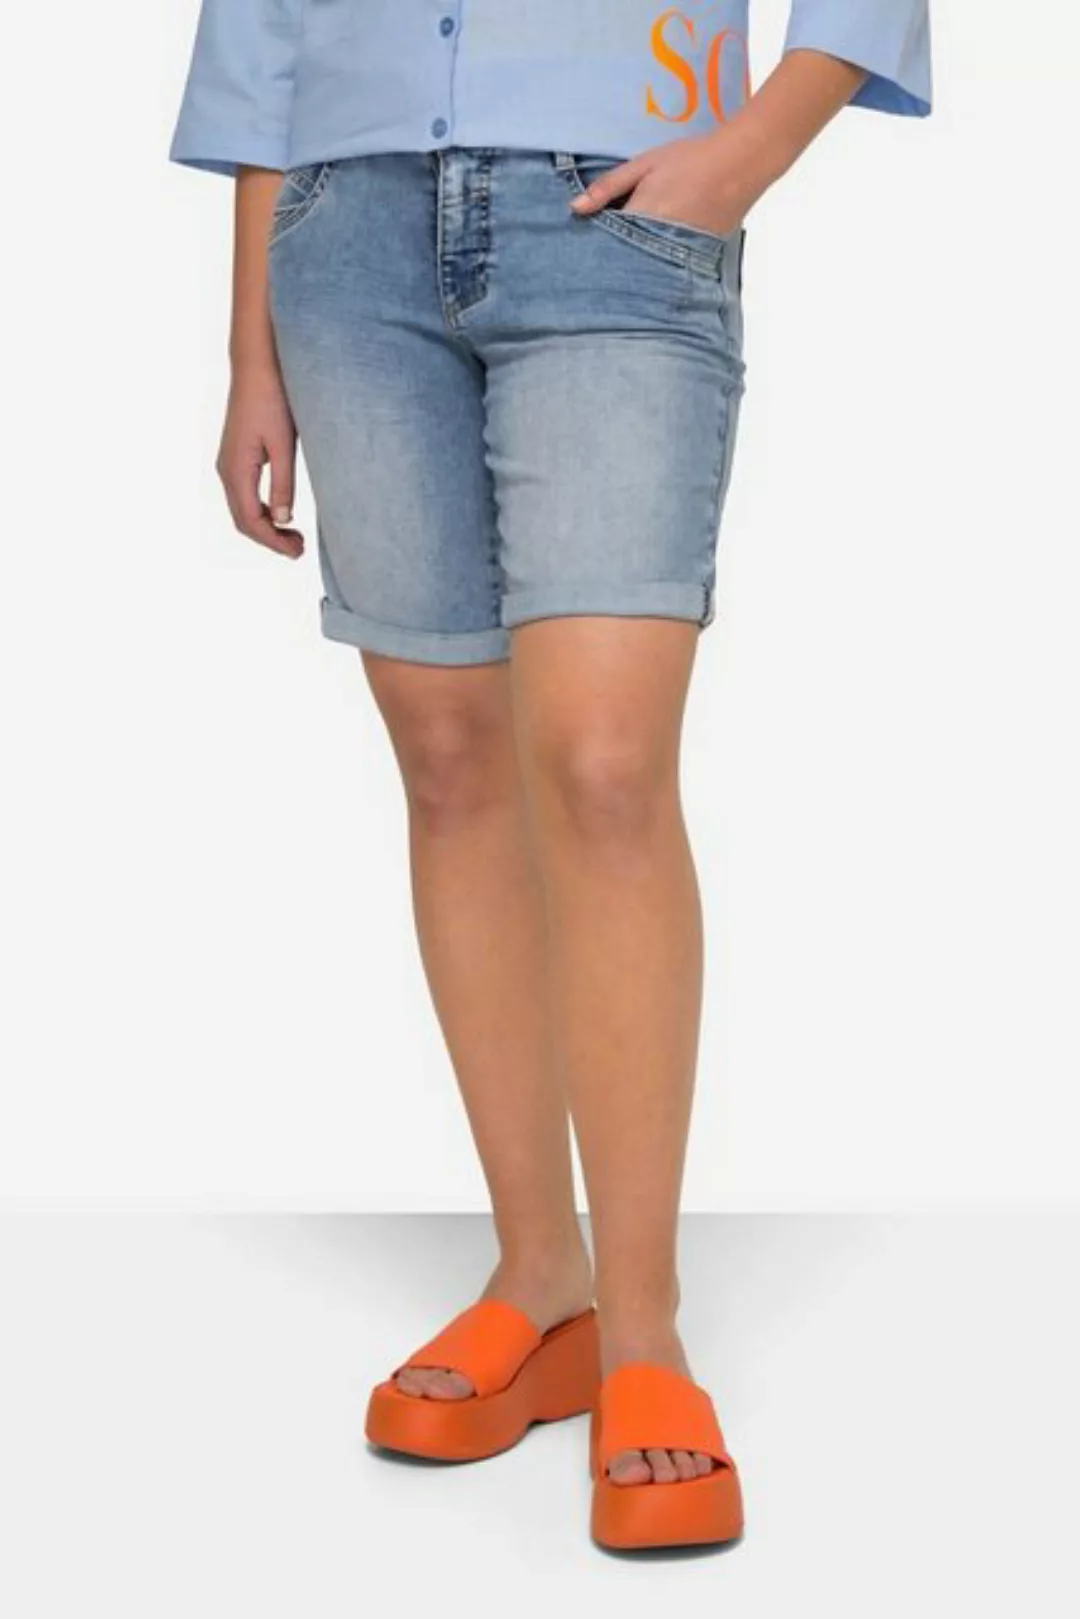 Laurasøn Regular-fit-Jeans Jeans-Shorts gerades Bein 4-Pocket günstig online kaufen